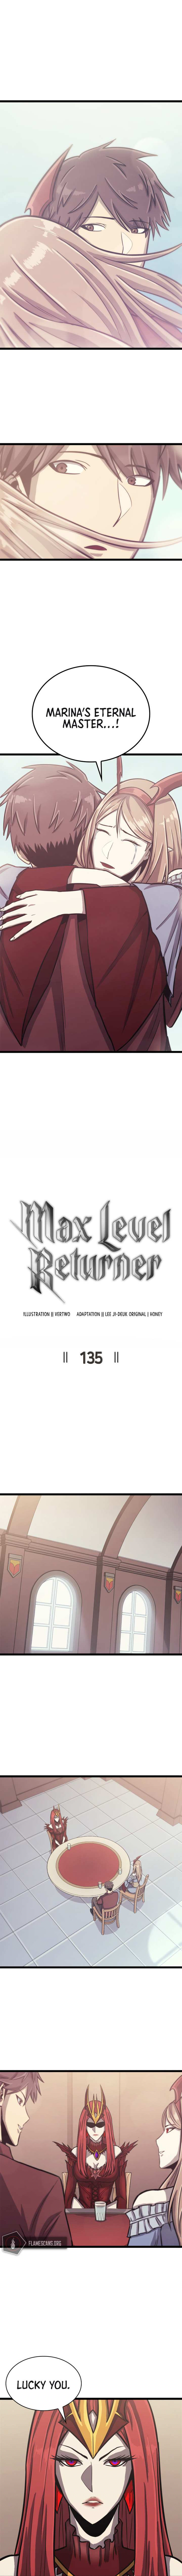 Max Level Returner, Max Level Returner manga, read Max Level Returner, Max Level Returner manga online